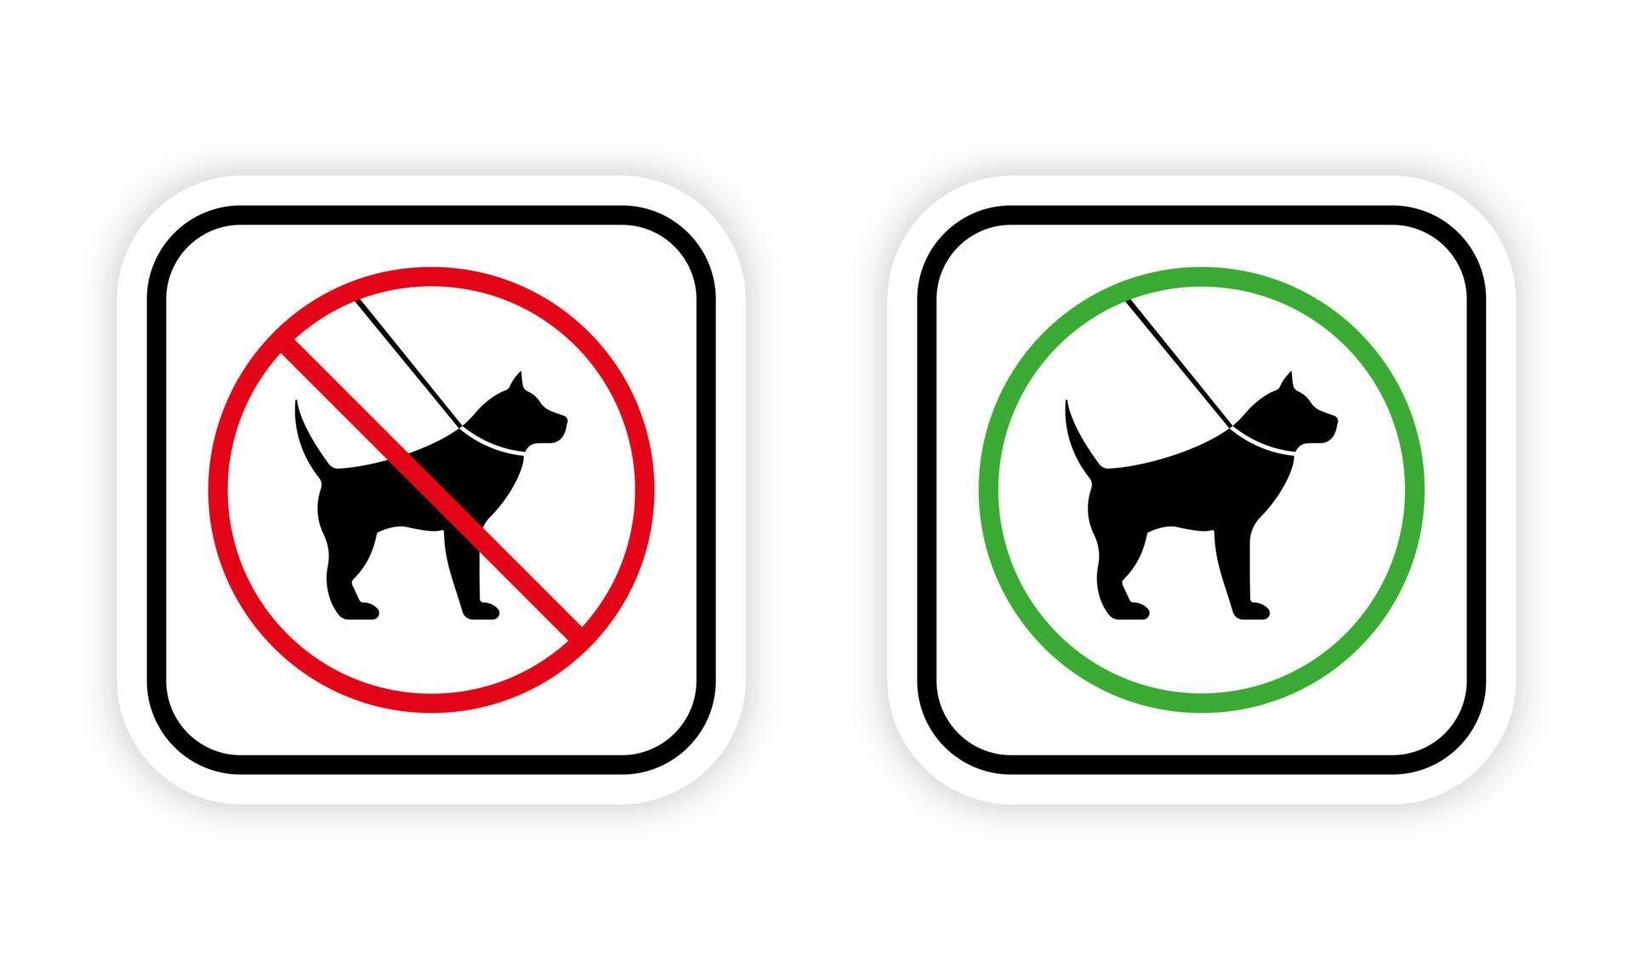 Haustier an der Leine Gehzone verbotenes Piktogramm. Verbot zu Fuß Hund schwarze Silhouette Symbol. Spaziergang Tier rotes Symbol zulassen. Erlaubnis zum Spazierengehen Haustier-Walking-Bereich grünes Kreisschild. isolierte Vektorillustration. vektor